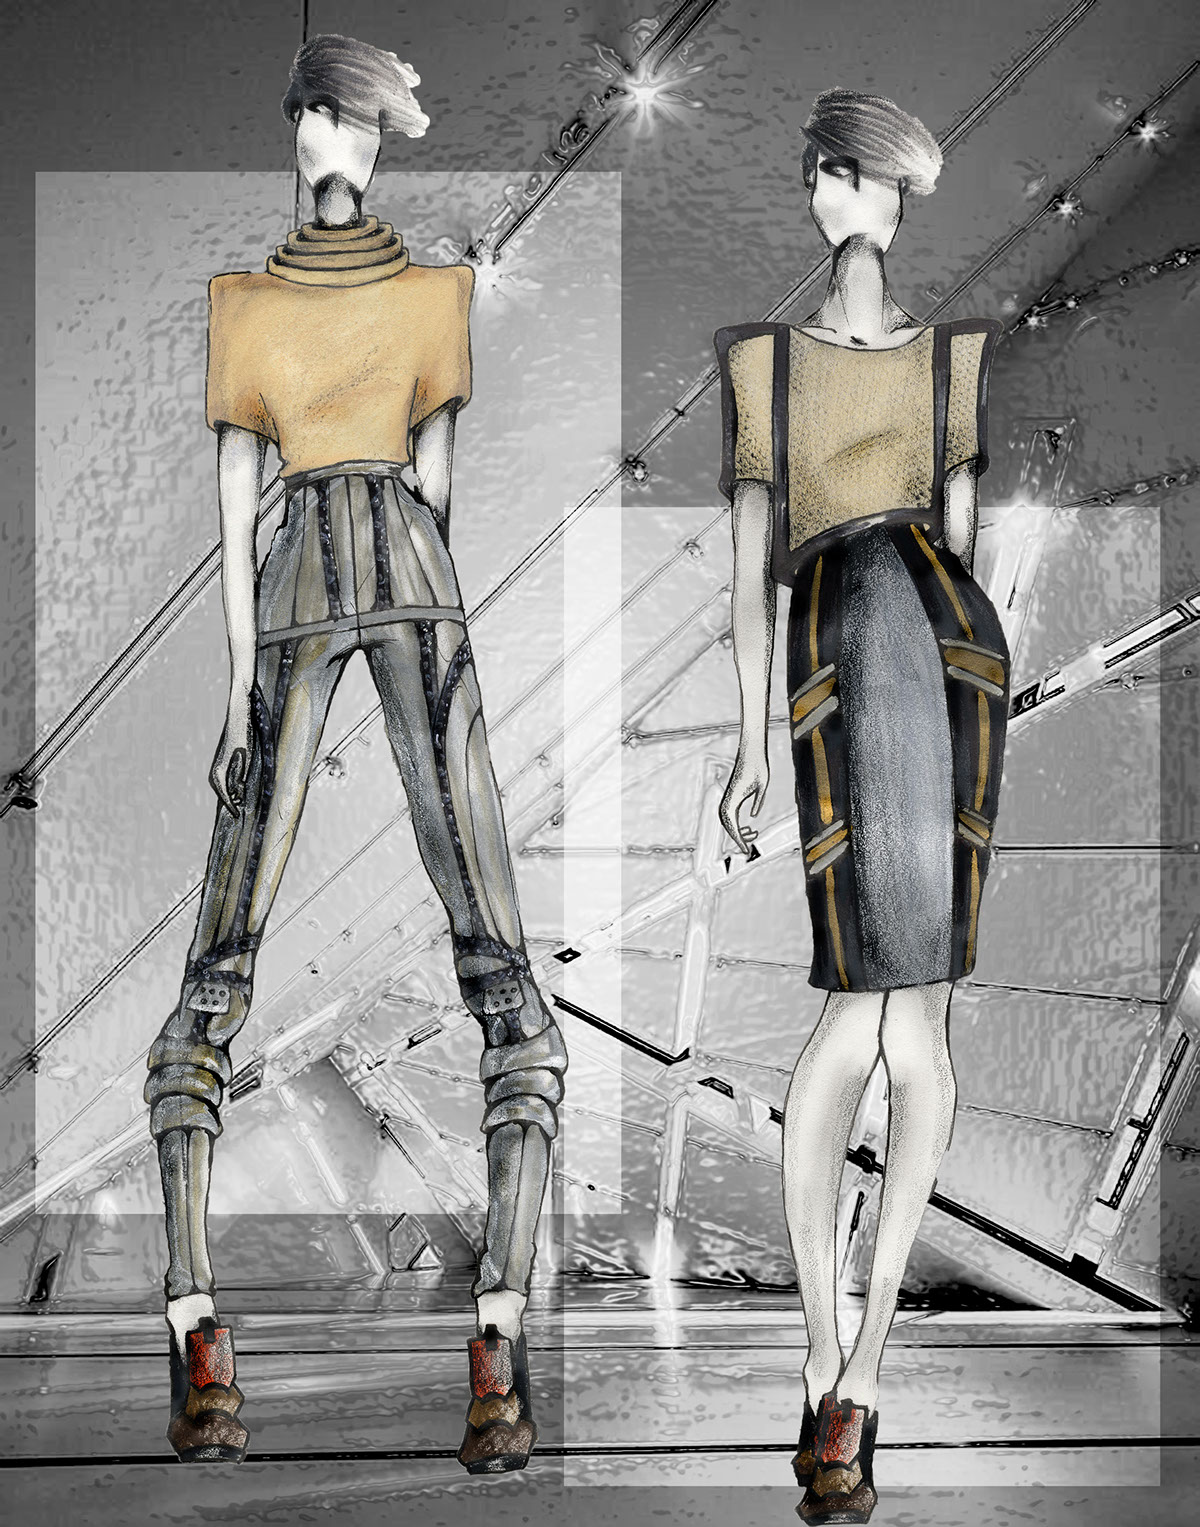 Deco Army fashion design